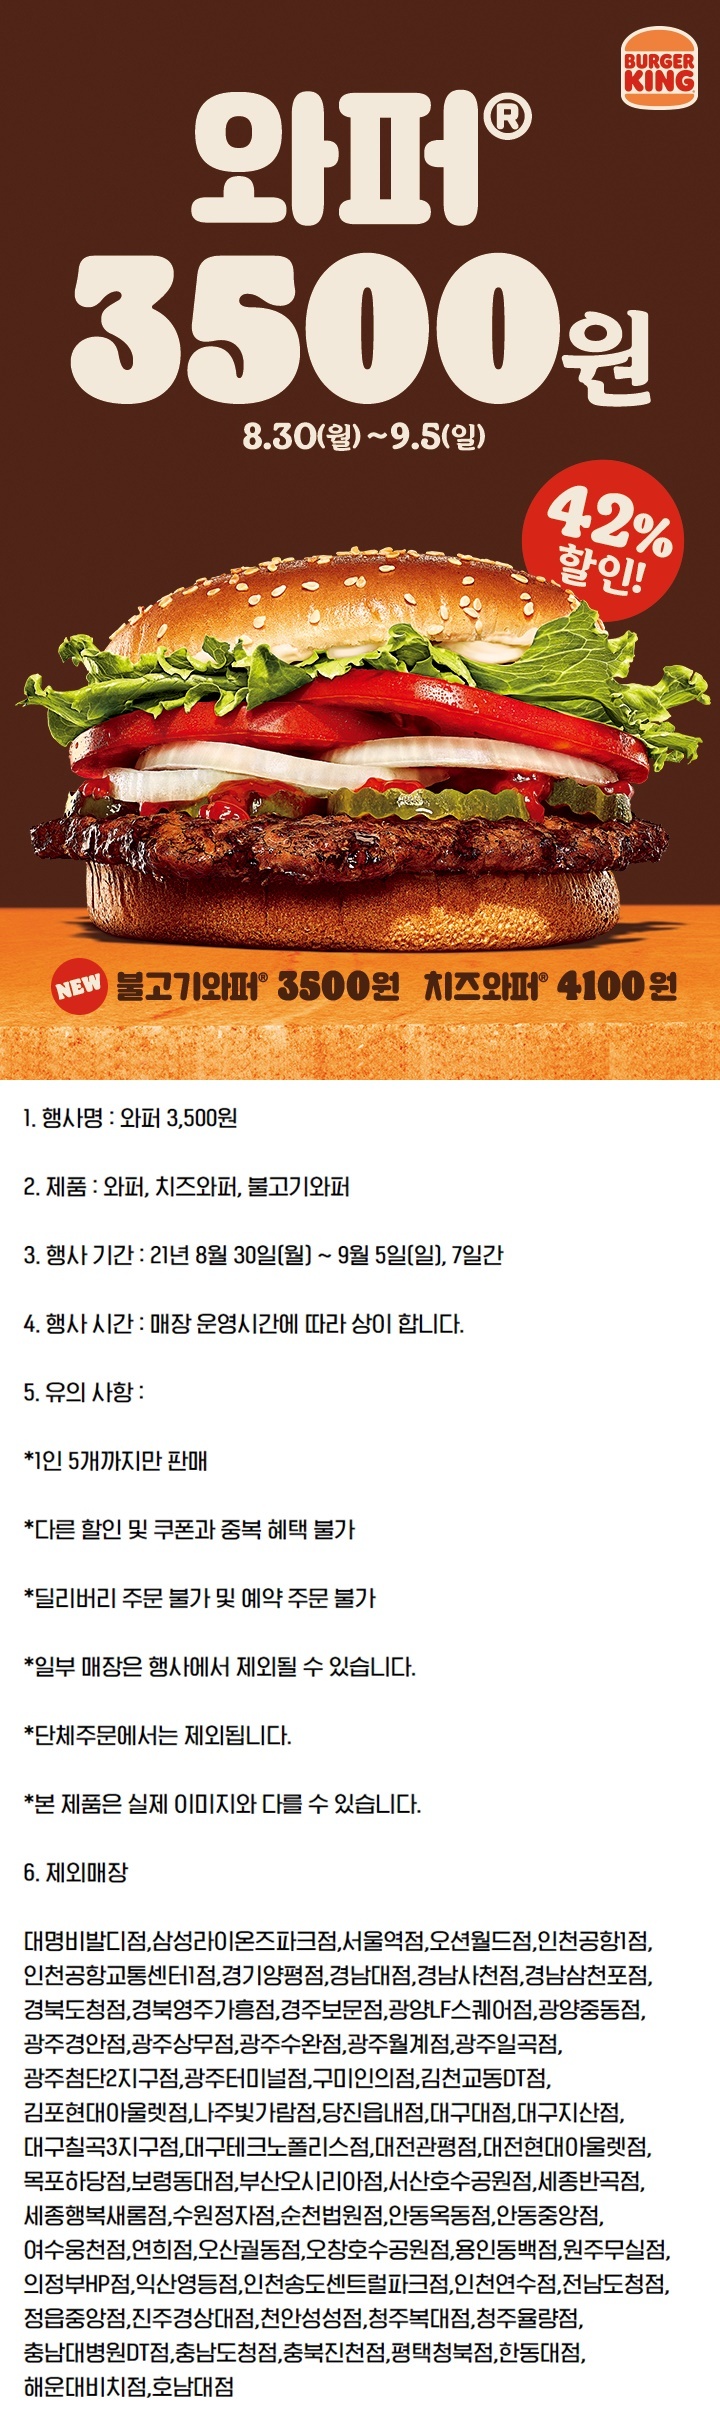 버거킹 행사 와퍼 3500원!!